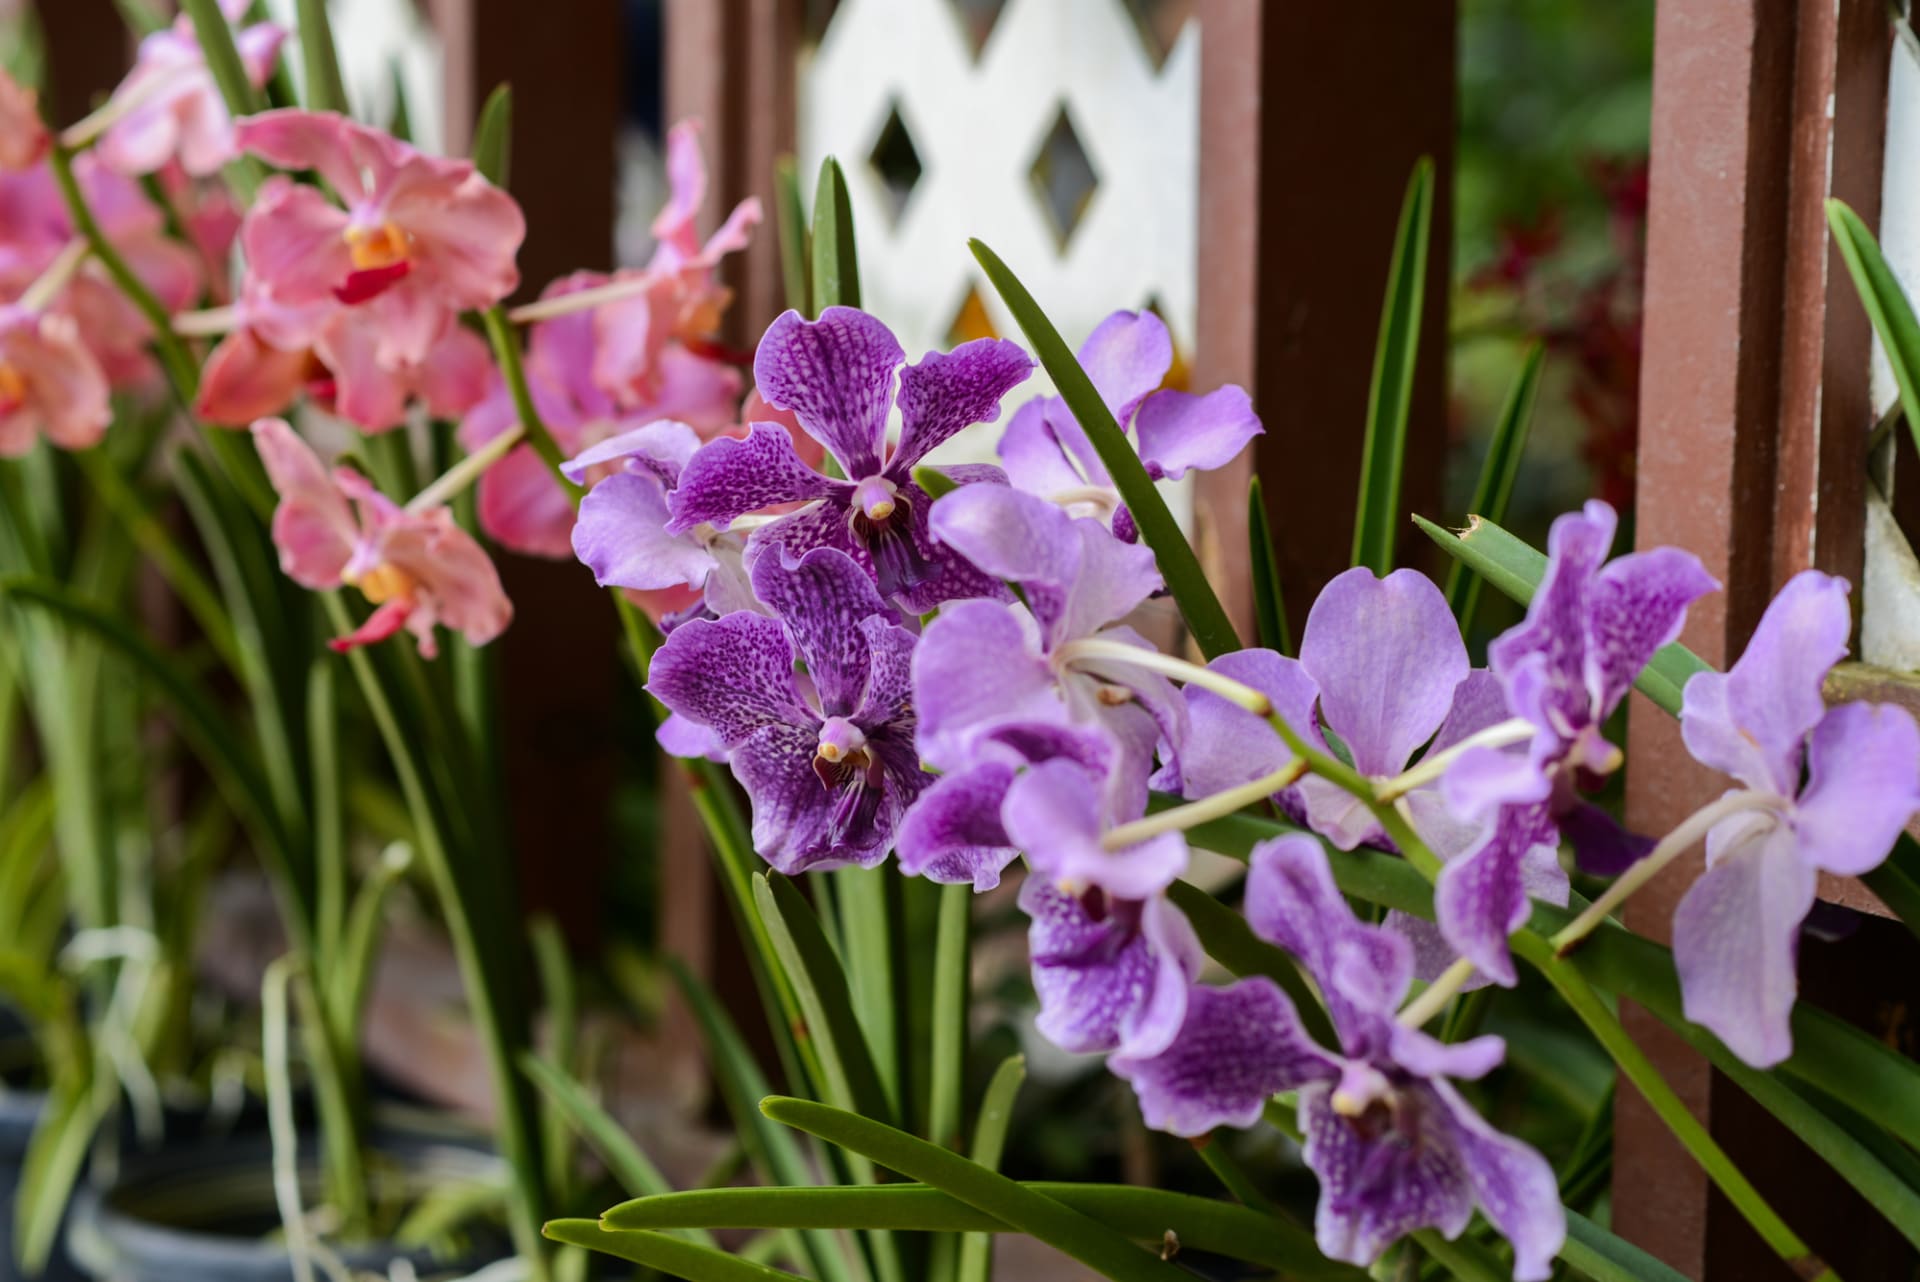 Letnění milují orchideje